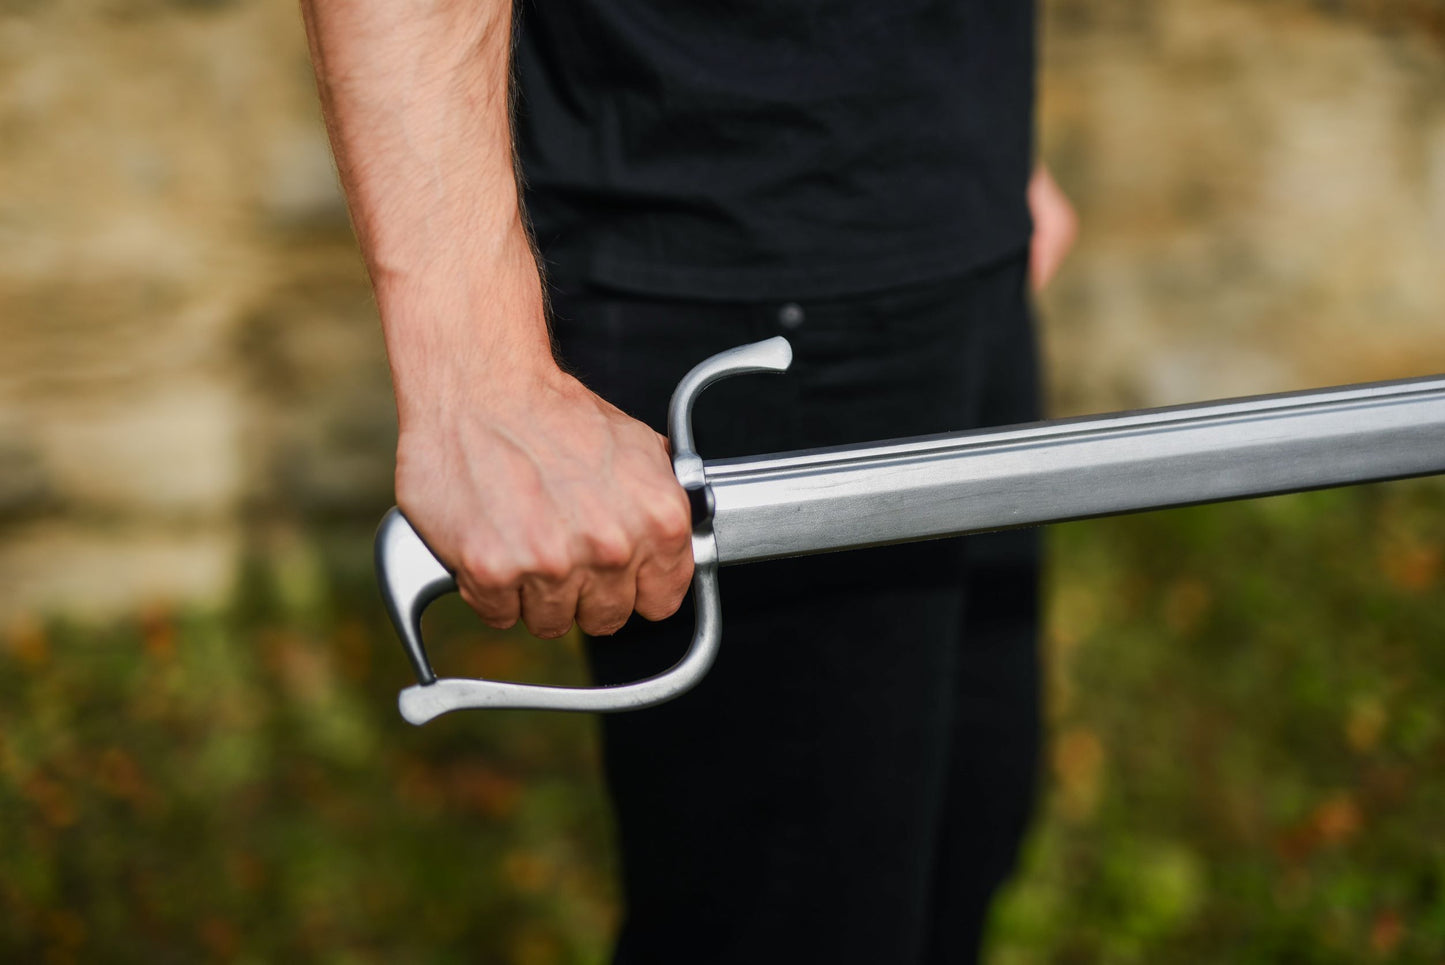 Hanger - one-handed sword